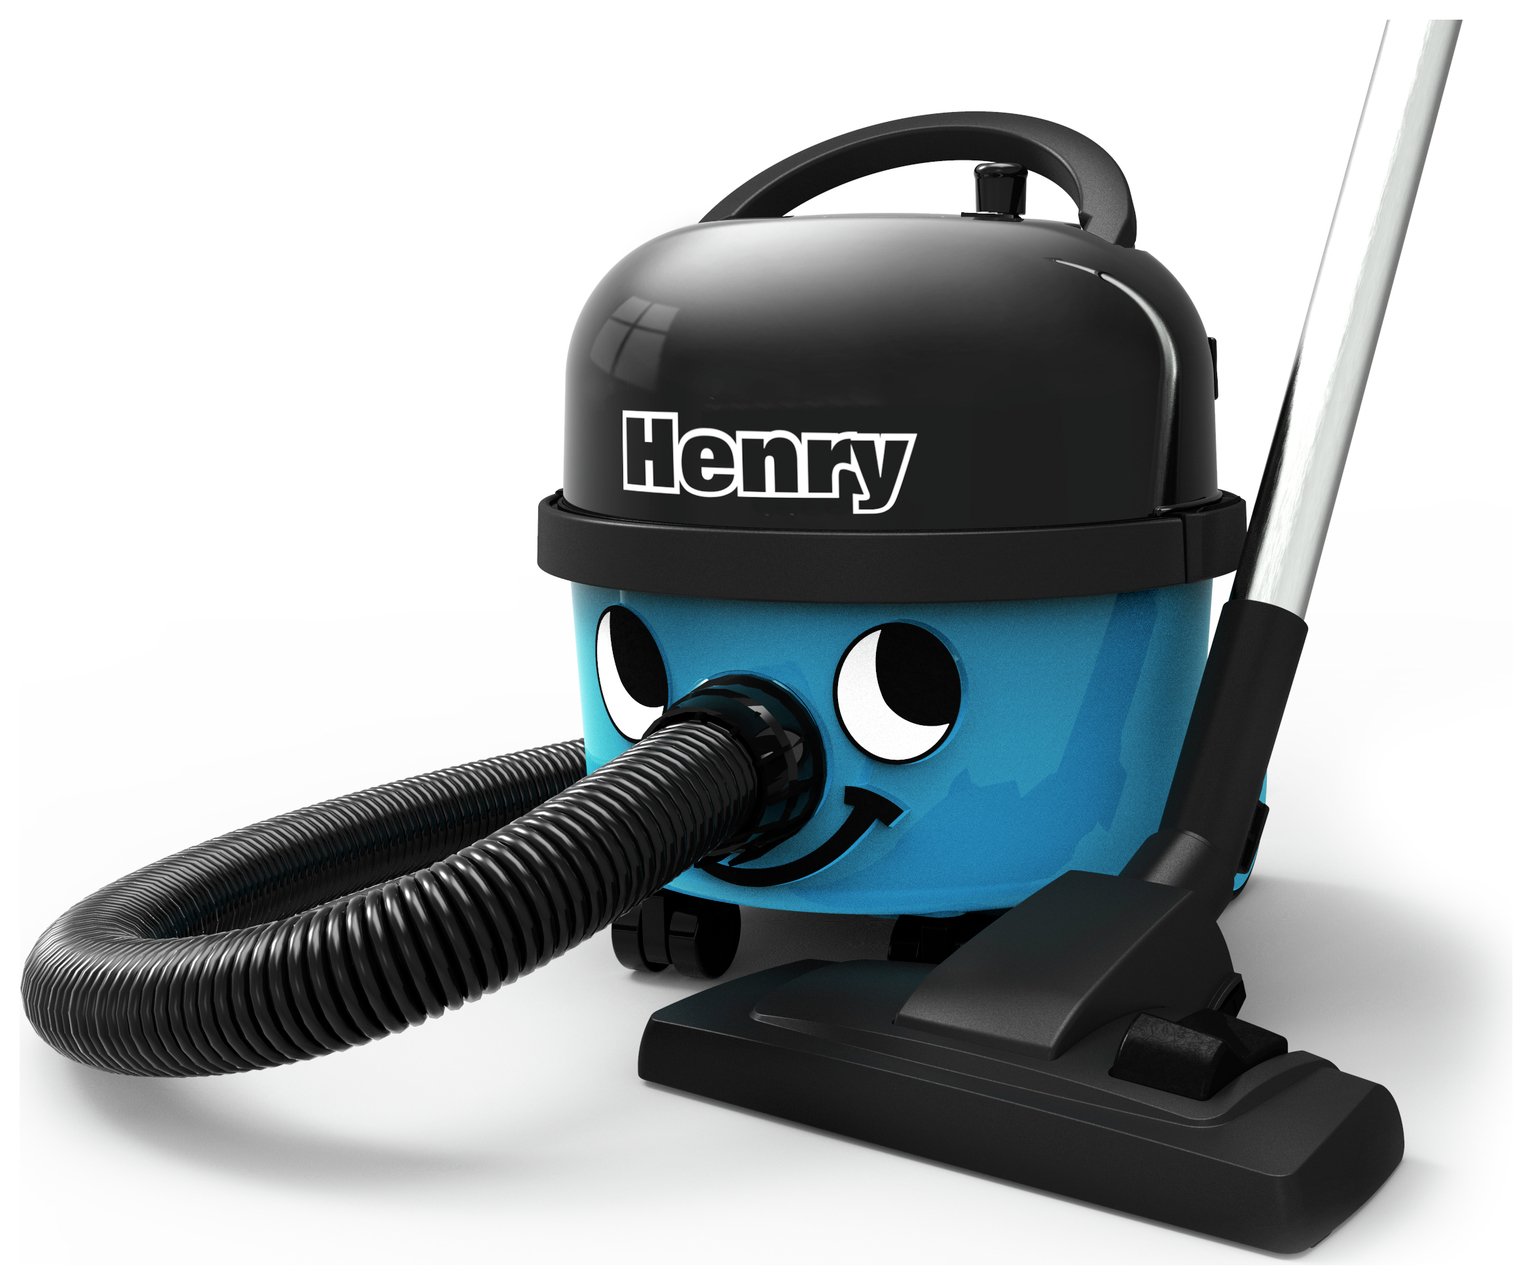 Henry HVR160-11 Bagged Cylinder Vacuum Cleaner